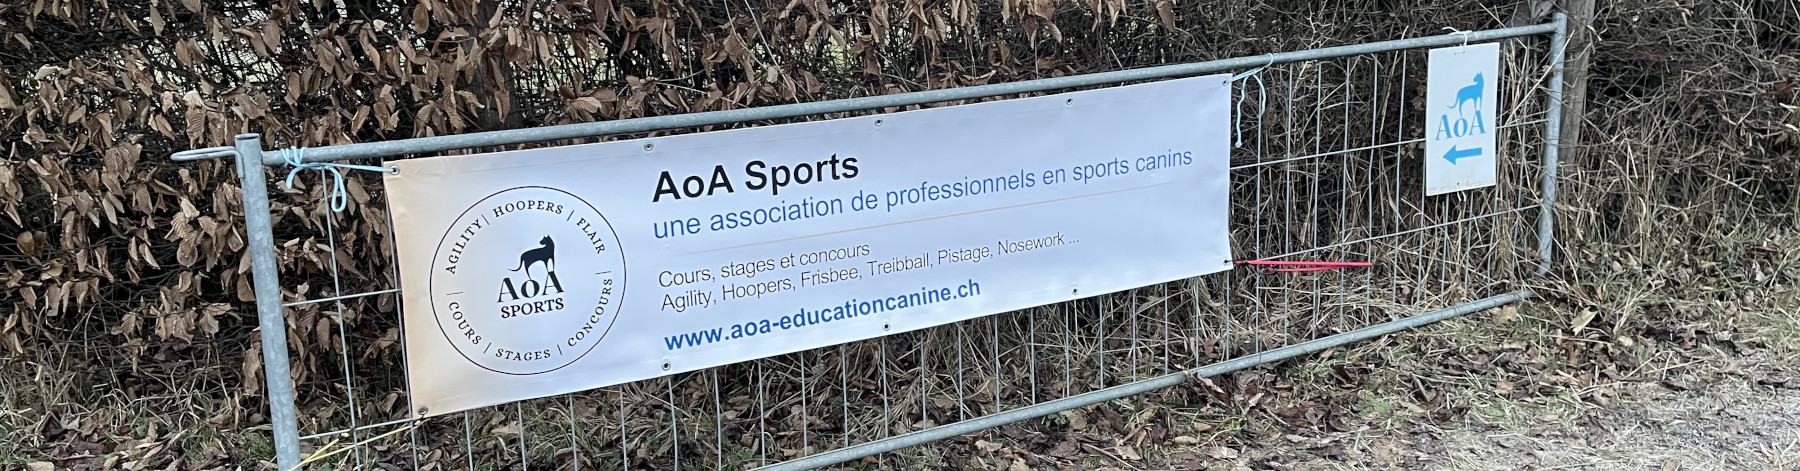 AoA Sports, membre SCS - AoA éducation canine, Genève